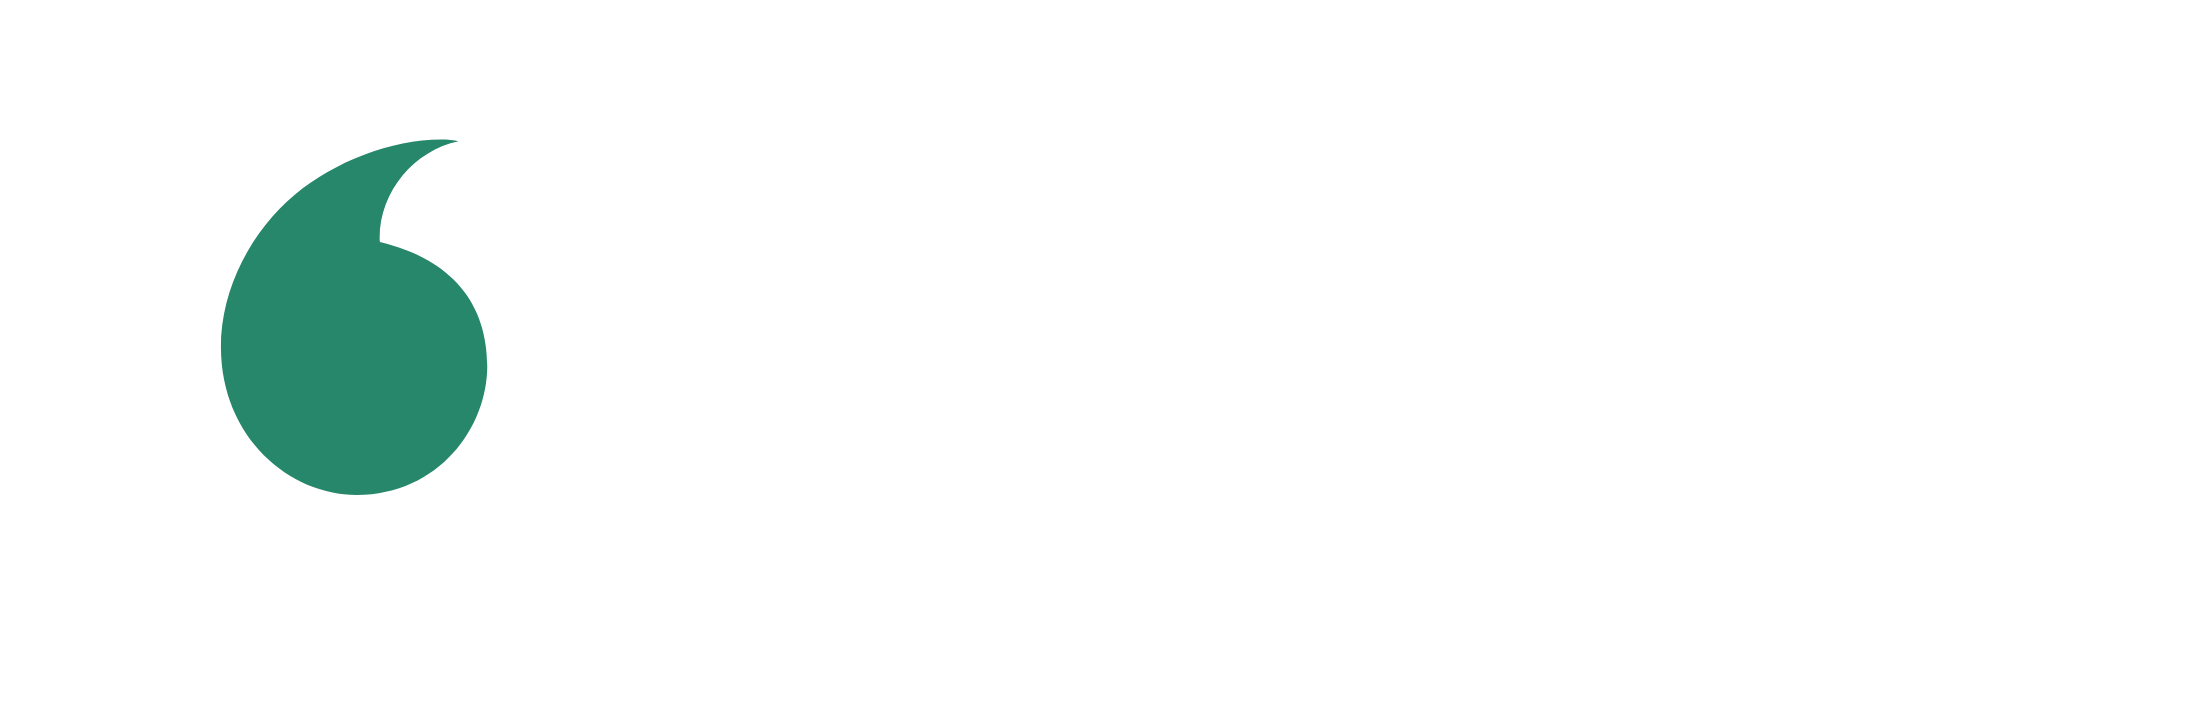 Das Logo von Vodafone, einem multinationalen Telekommunikationsunternehmen.